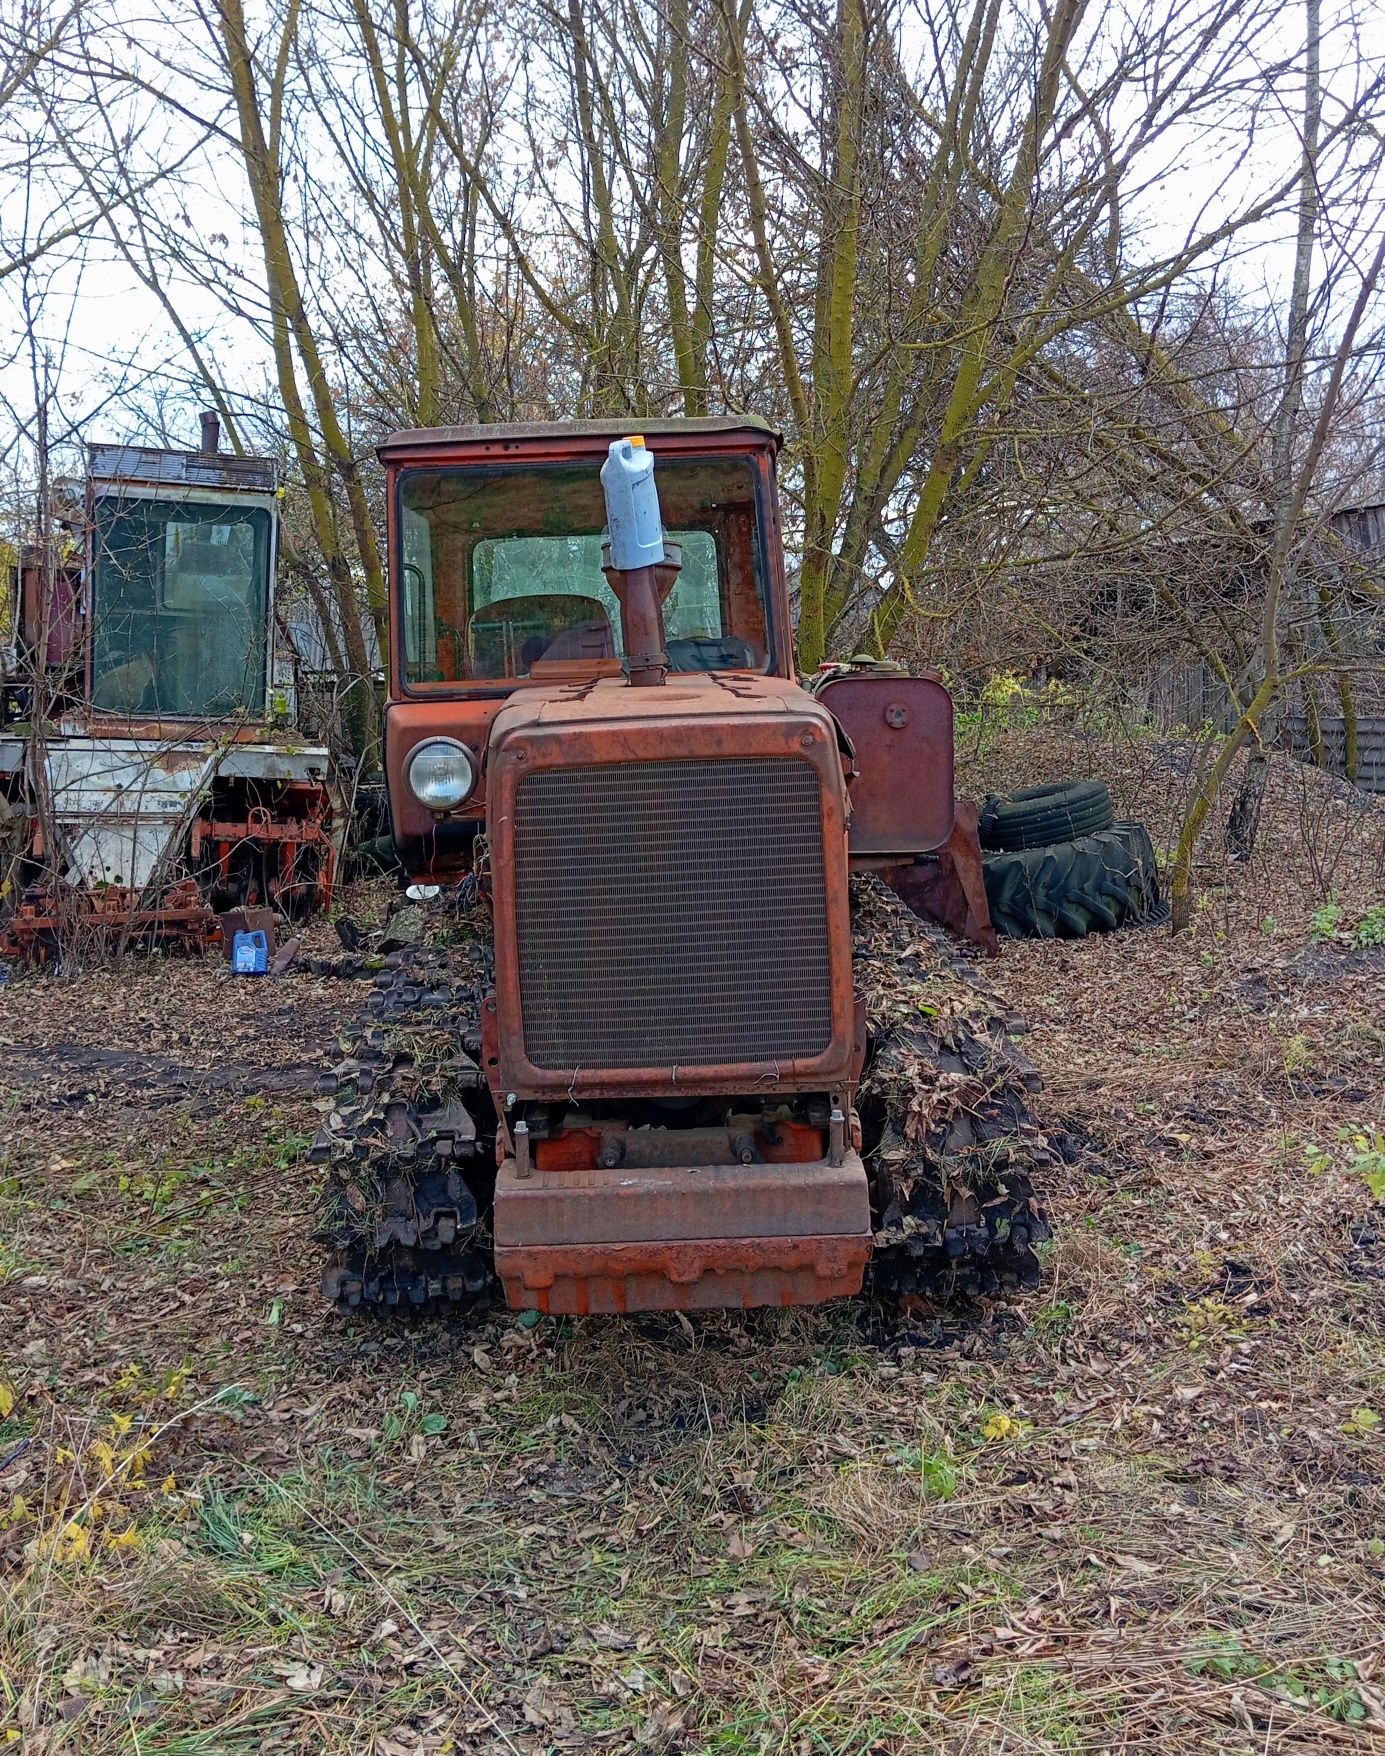 Продам гусеничный трактор ДТ-75